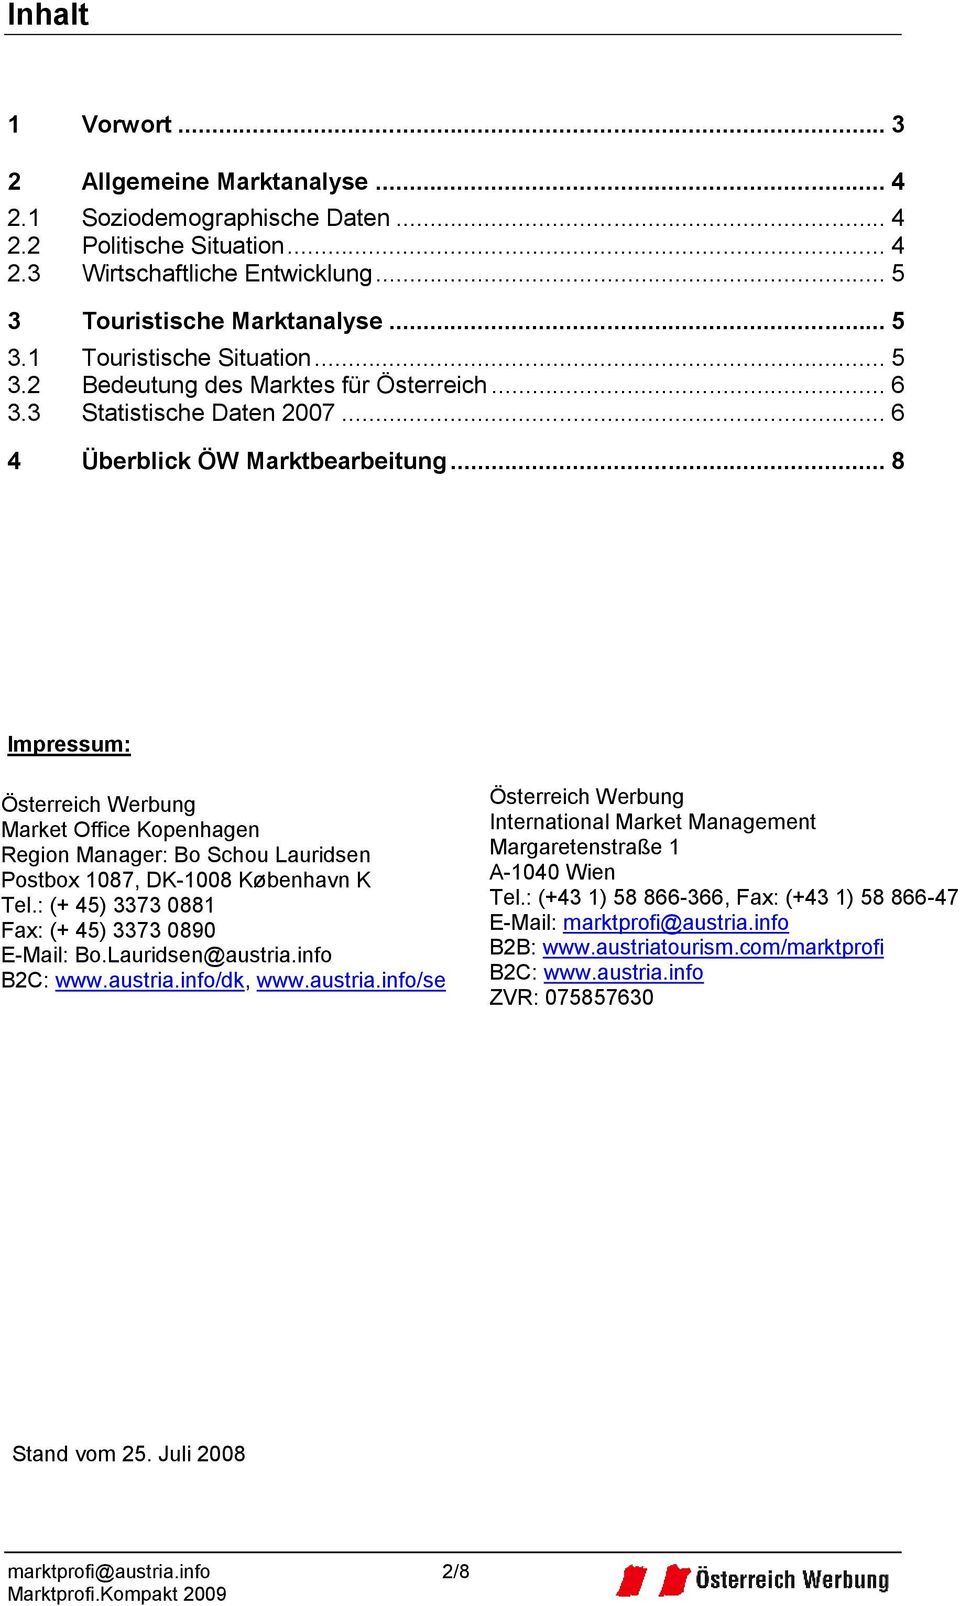 .. 8 Impressum: Österreich Werbung Market Office Kopenhagen Region Manager: Bo Schou Lauridsen Postbox 1087, DK-1008 København K Tel.: (+ 45) 3373 0881 Fax: (+ 45) 3373 0890 E-Mail: Bo.